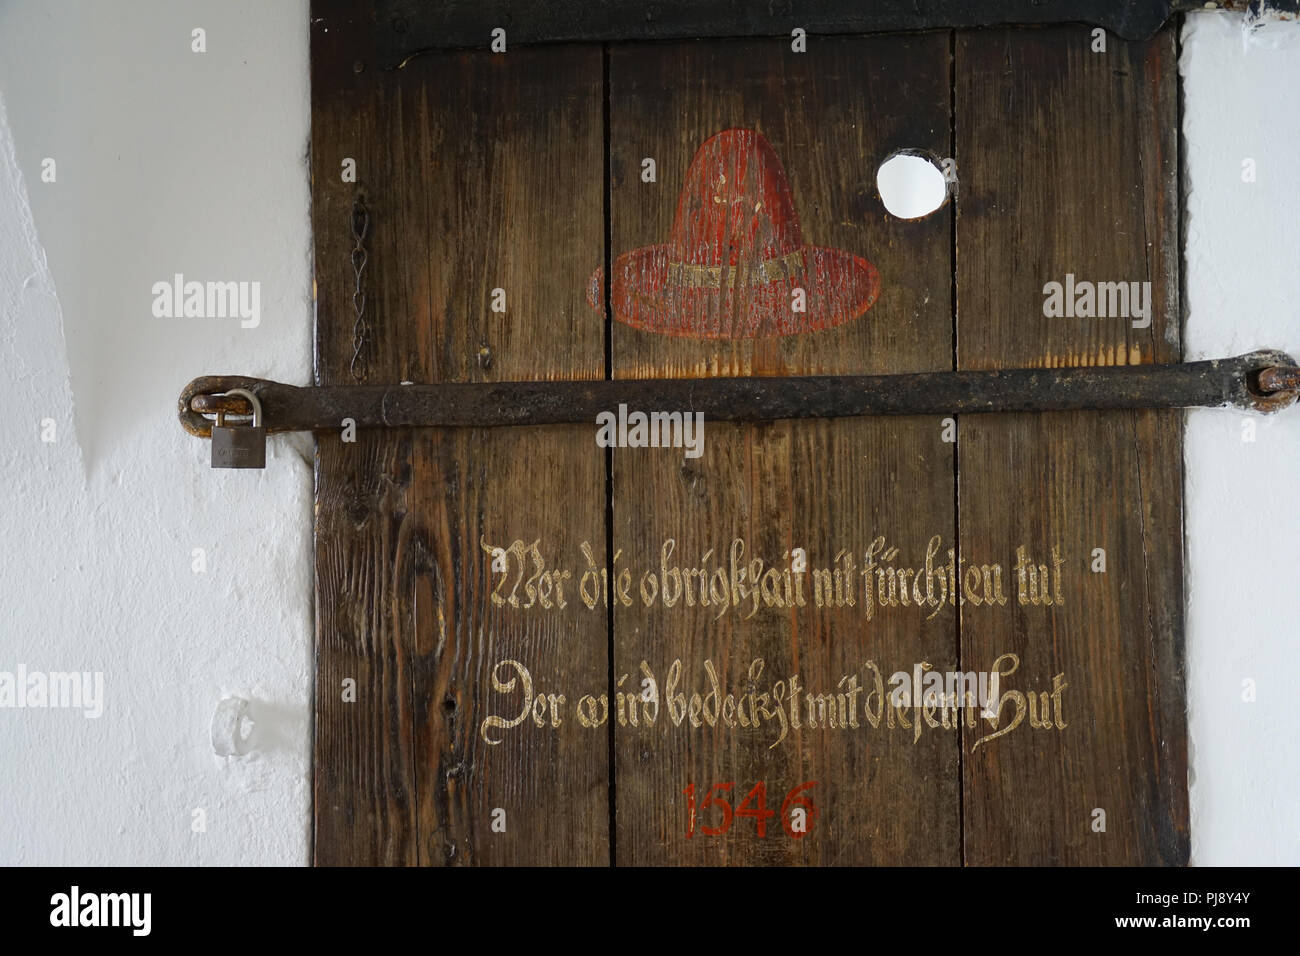 Inschrift, roter Hut, alte Holztür, ehemals Eingang zum Buergergefängnis, altes Rathaus, Passau, Bayern Deutschland Stockfoto